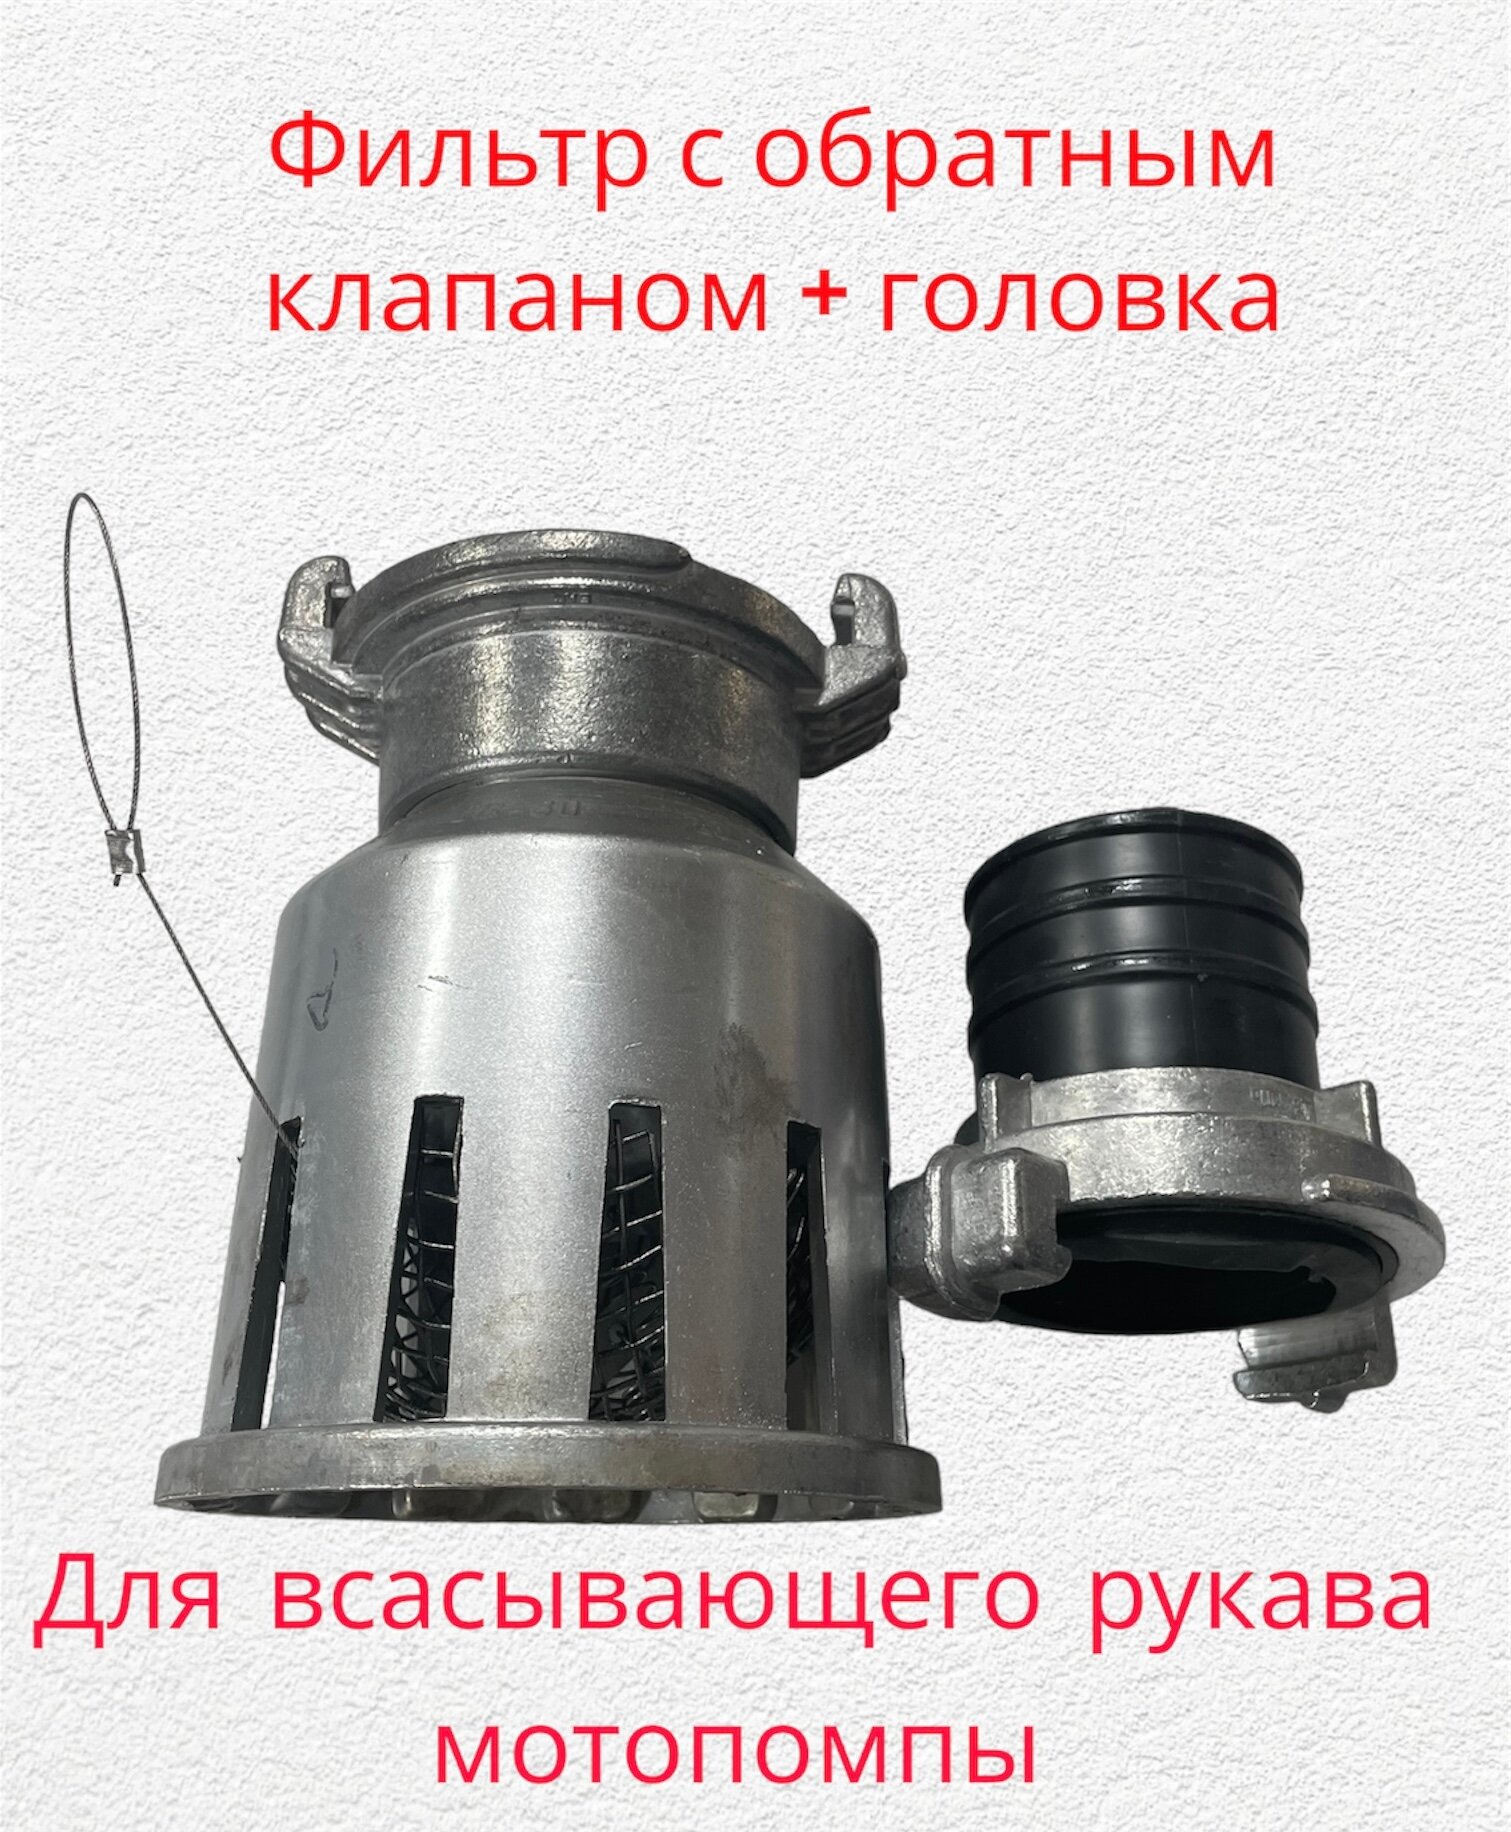 Фильтр заборный 80 мм с обратным клапаном в комплекте с головкой к шлангам для мотопомпы